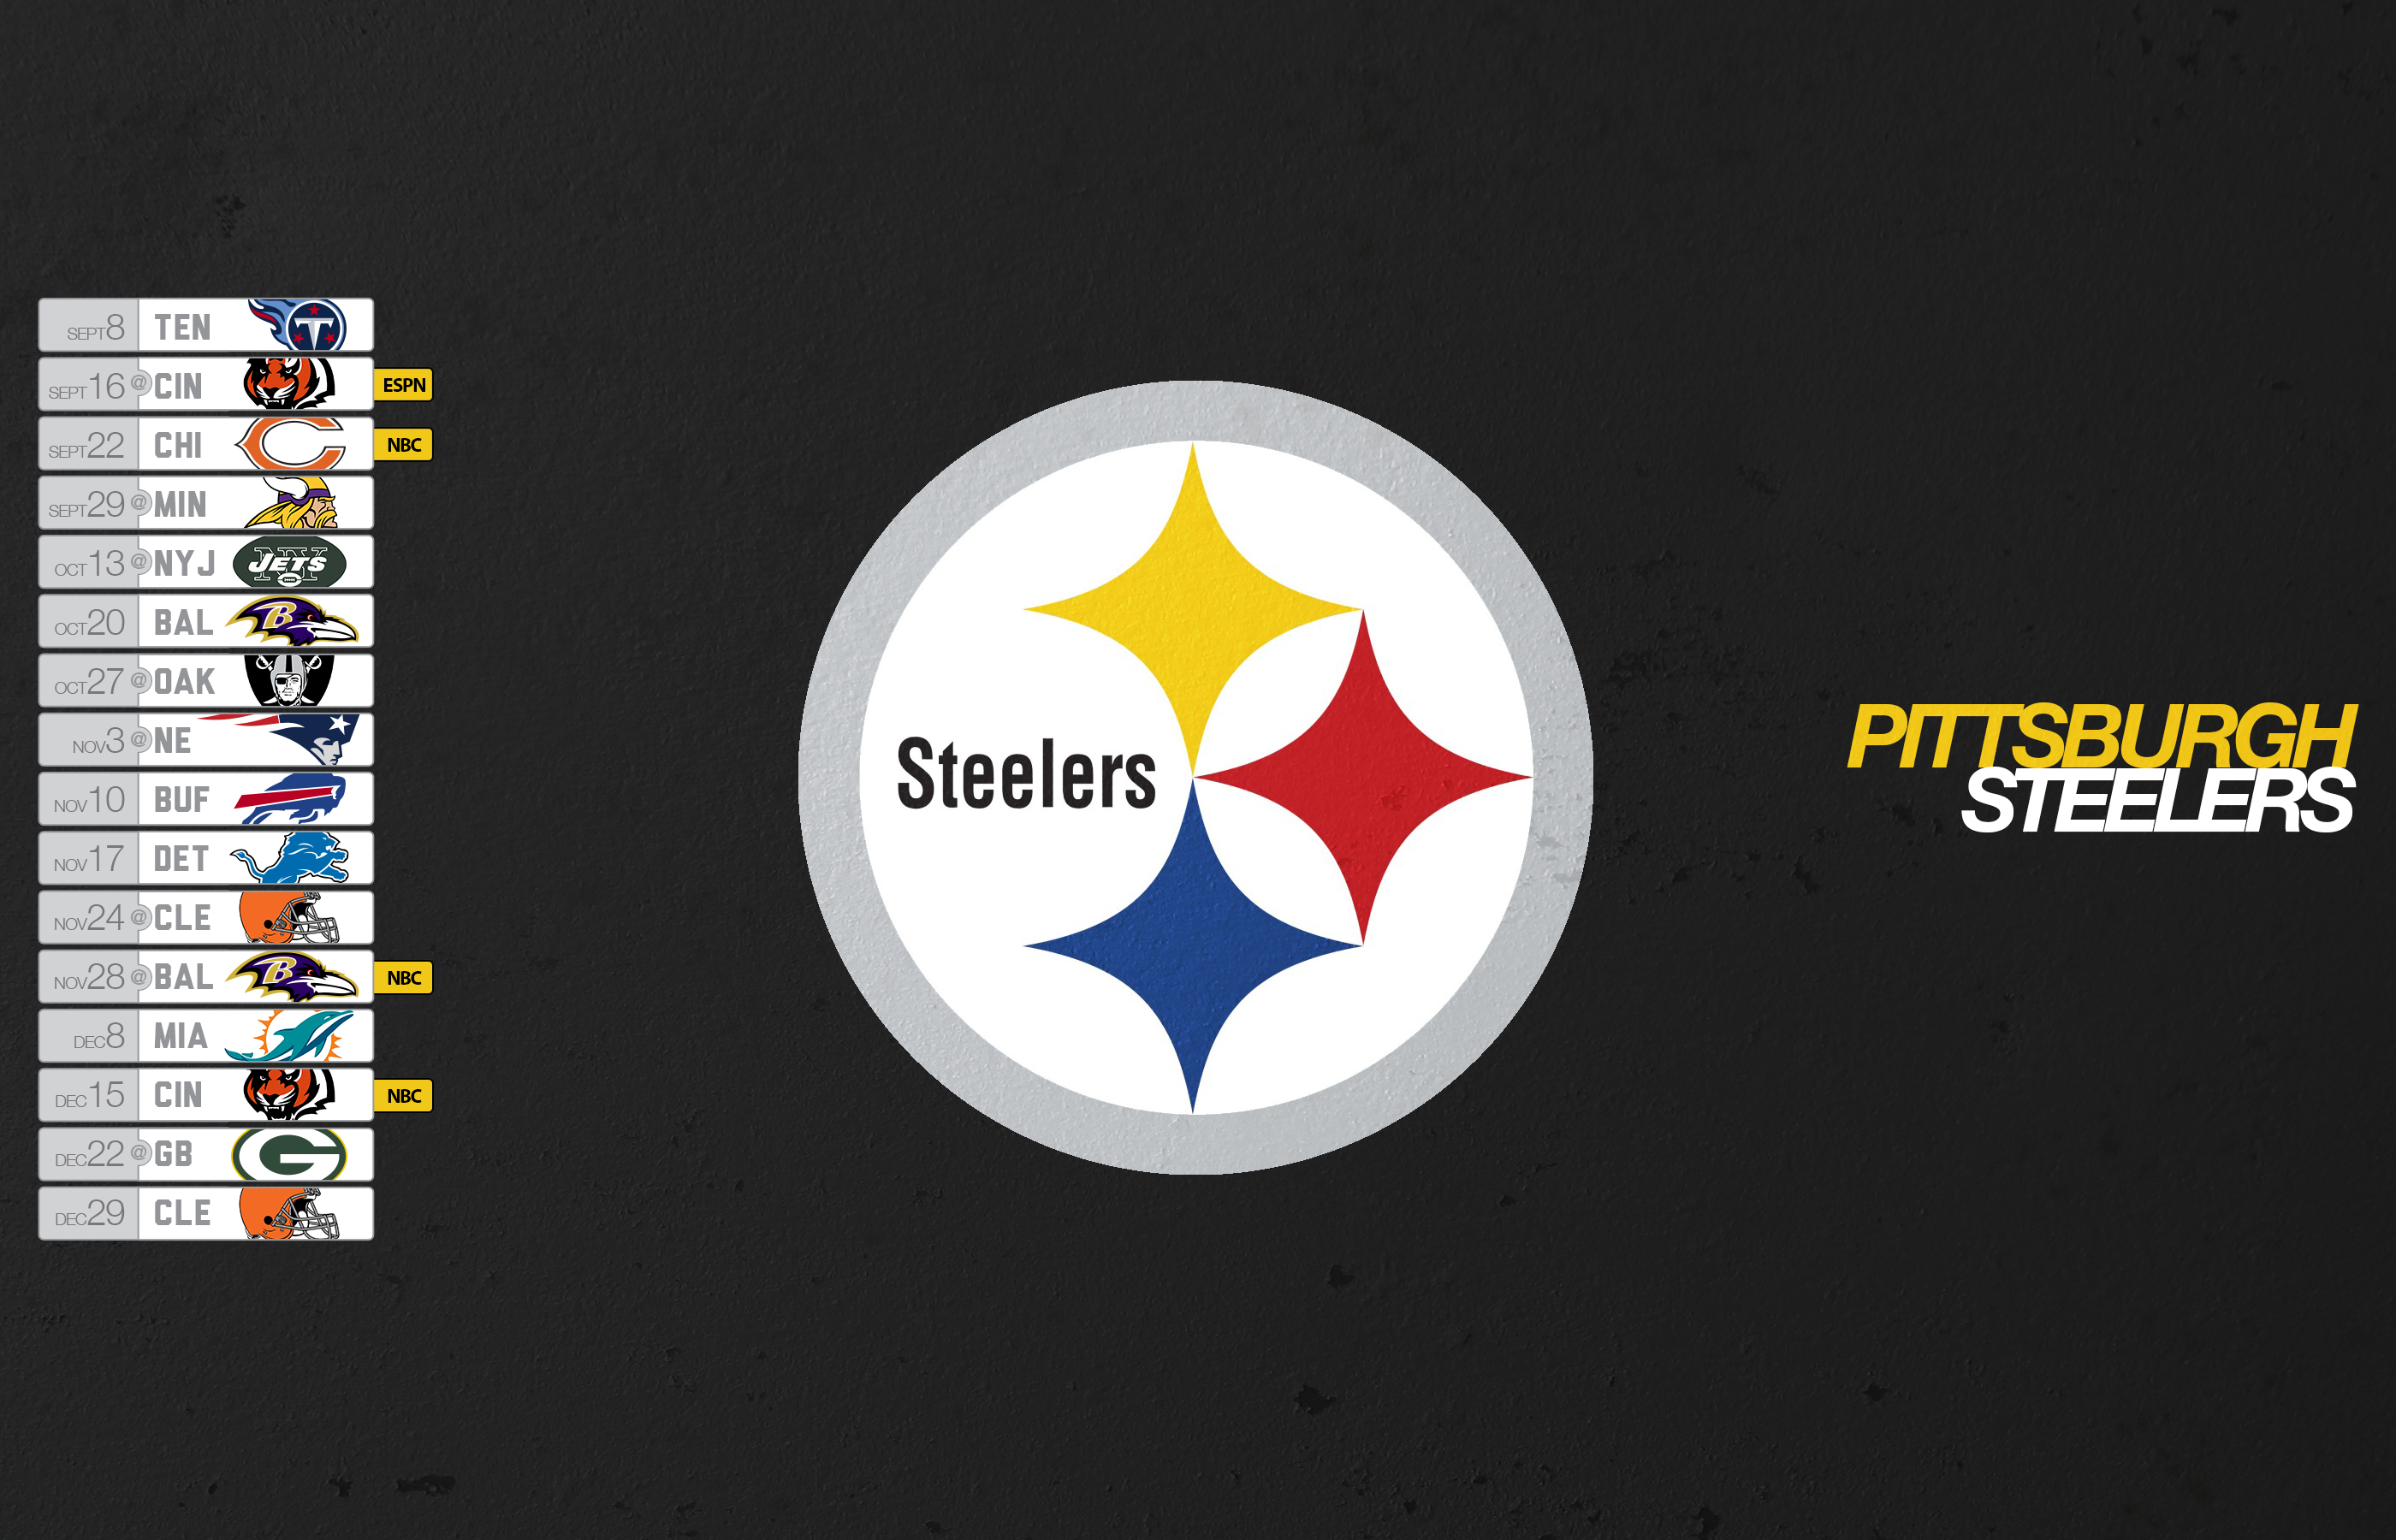 Pittsburgh Steelers Schedule Desktop Wallpaper